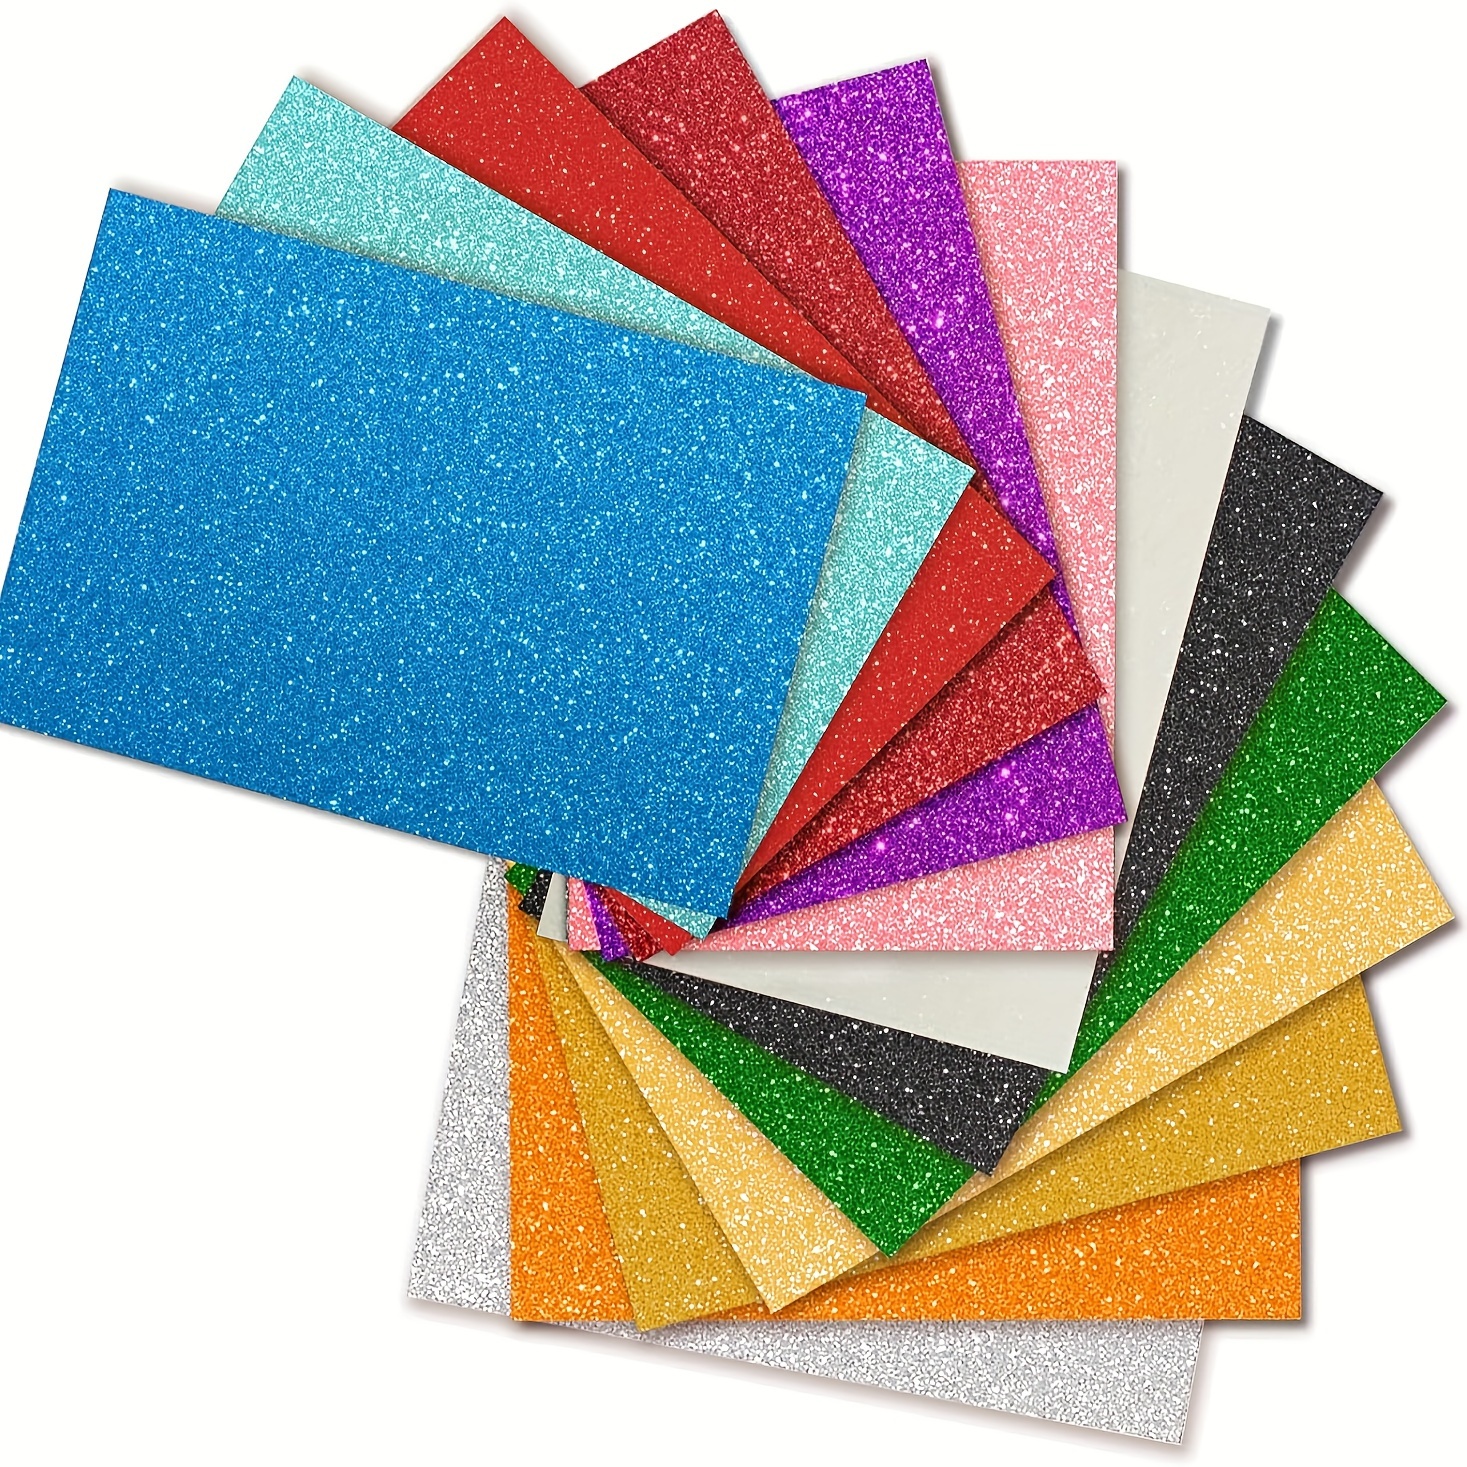 ArtSkills Glitter Paper